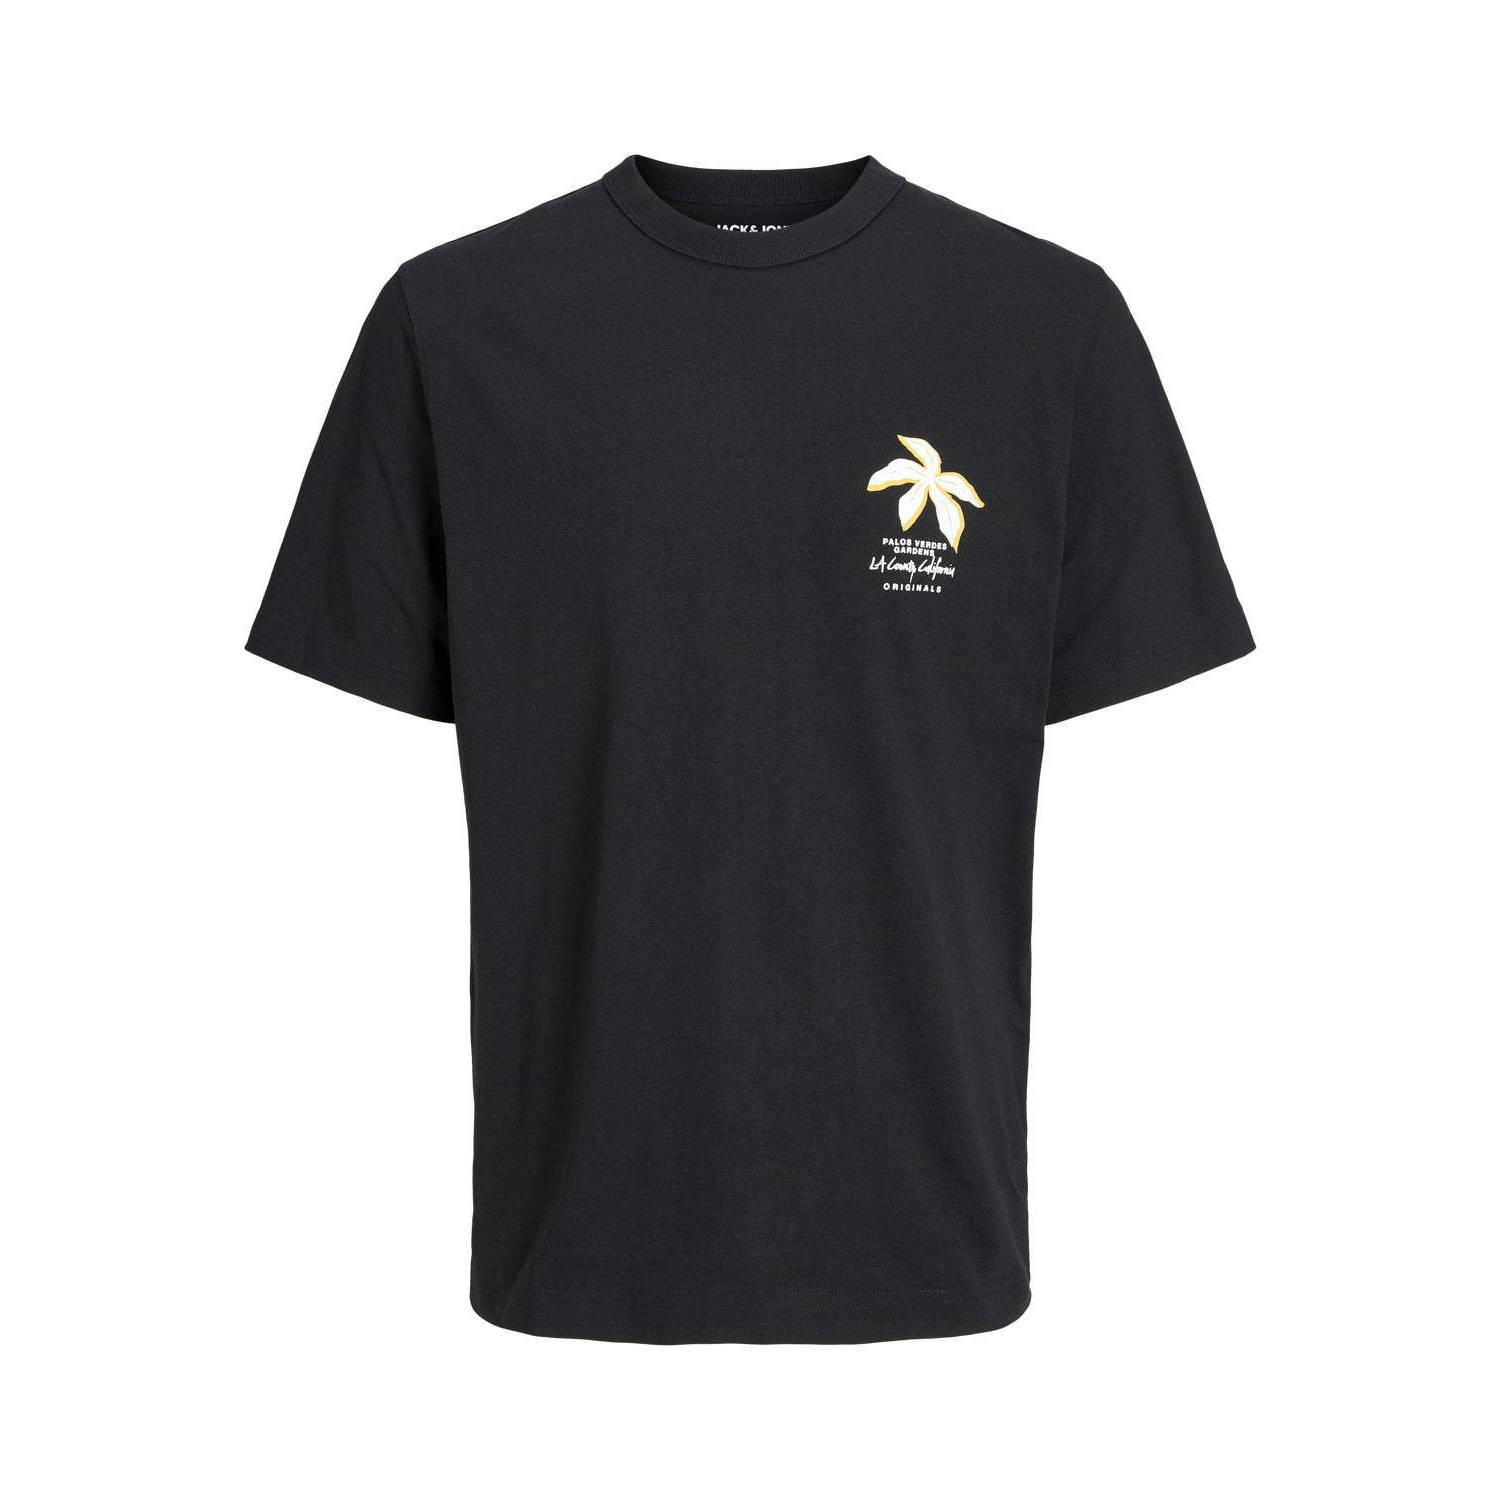 JACK & JONES PLUS SIZE T-shirt Plus Size met printopdruk black